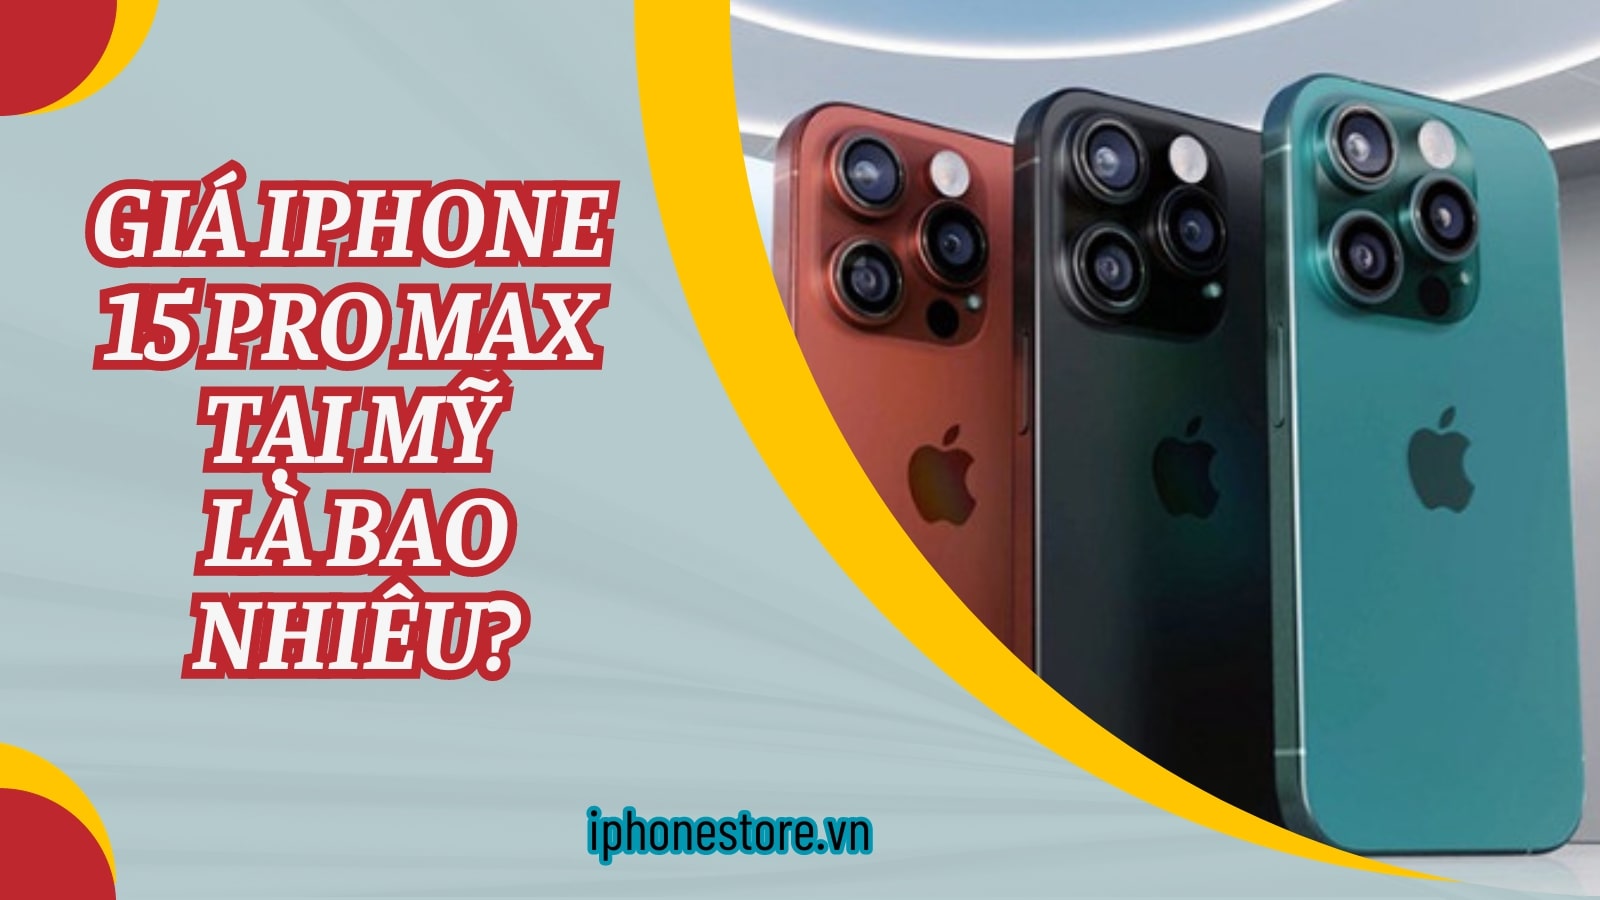 Giá iPhone 15 pro max tại Mỹ là bao nhiêu?